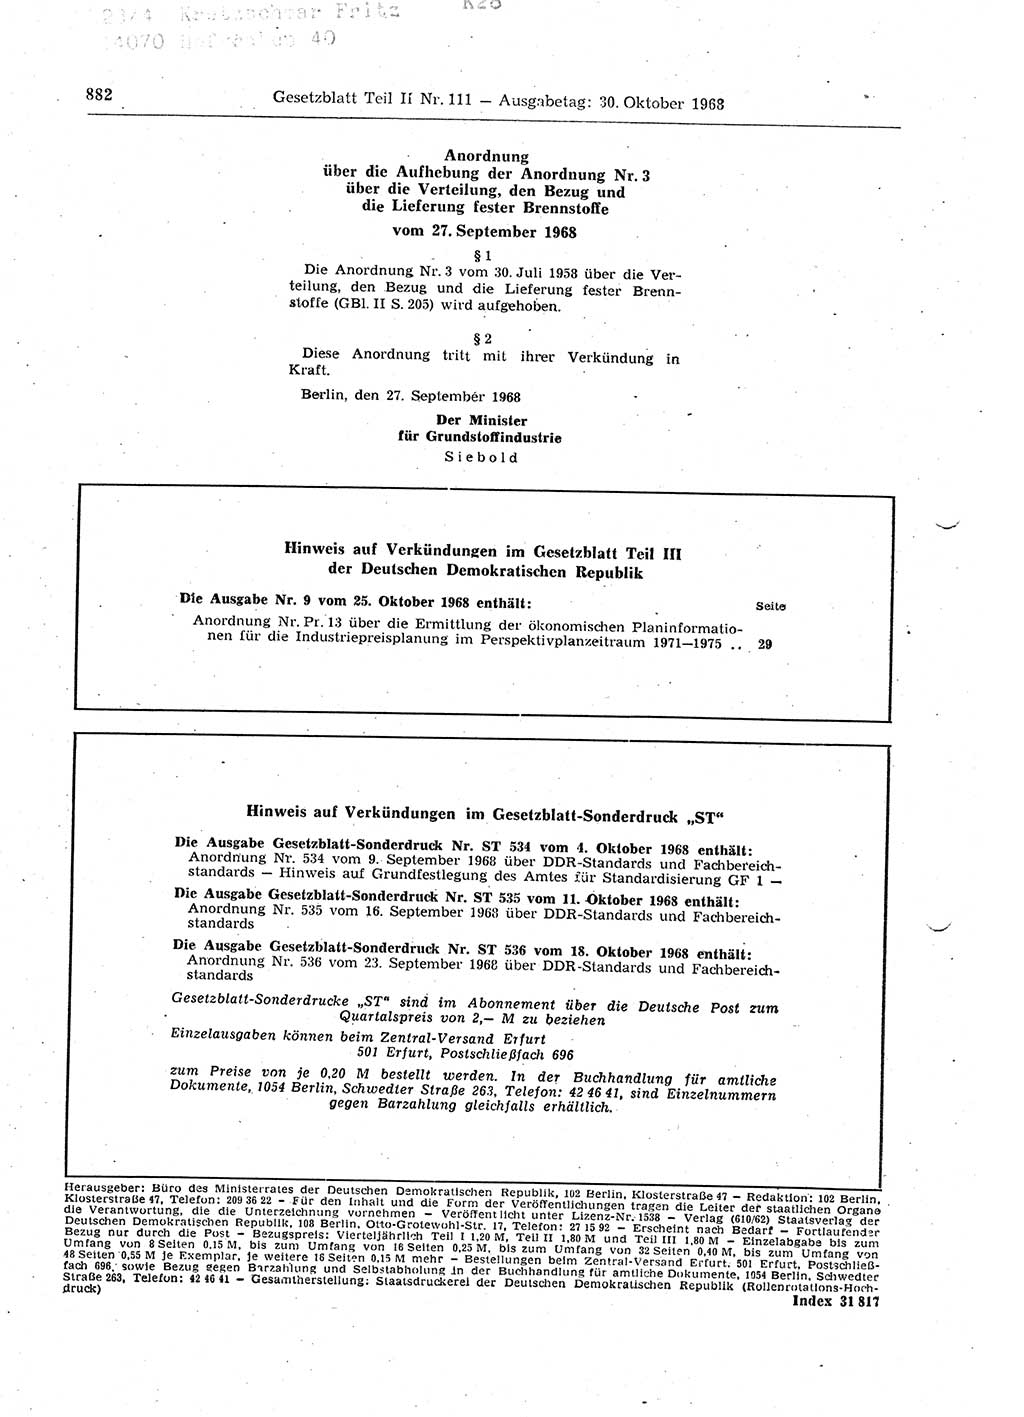 Gesetzblatt (GBl.) der Deutschen Demokratischen Republik (DDR) Teil ⅠⅠ 1968, Seite 882 (GBl. DDR ⅠⅠ 1968, S. 882)